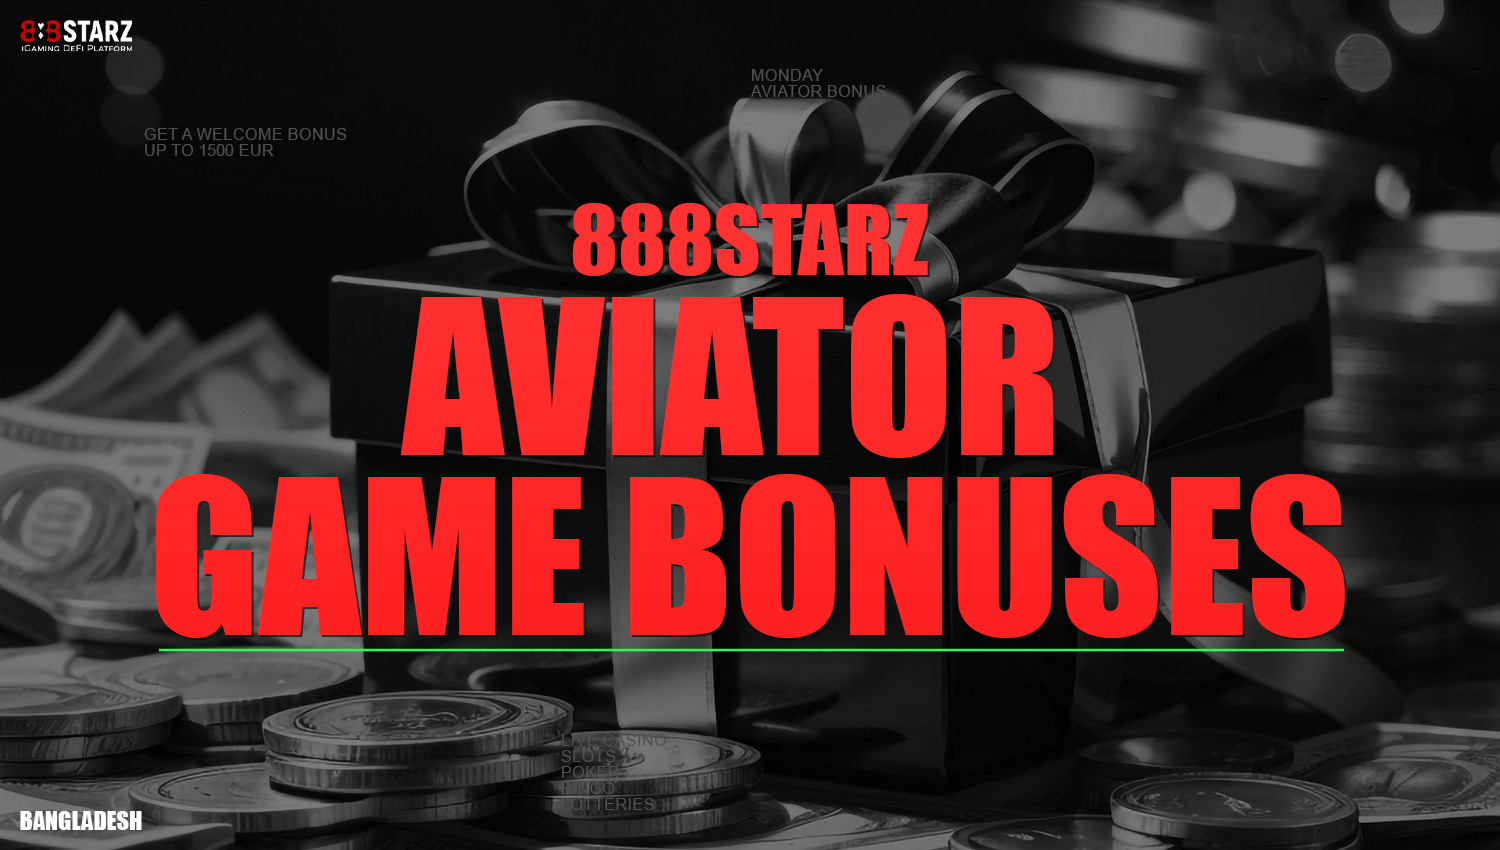 Bonuses from 888starz for Aviator fans